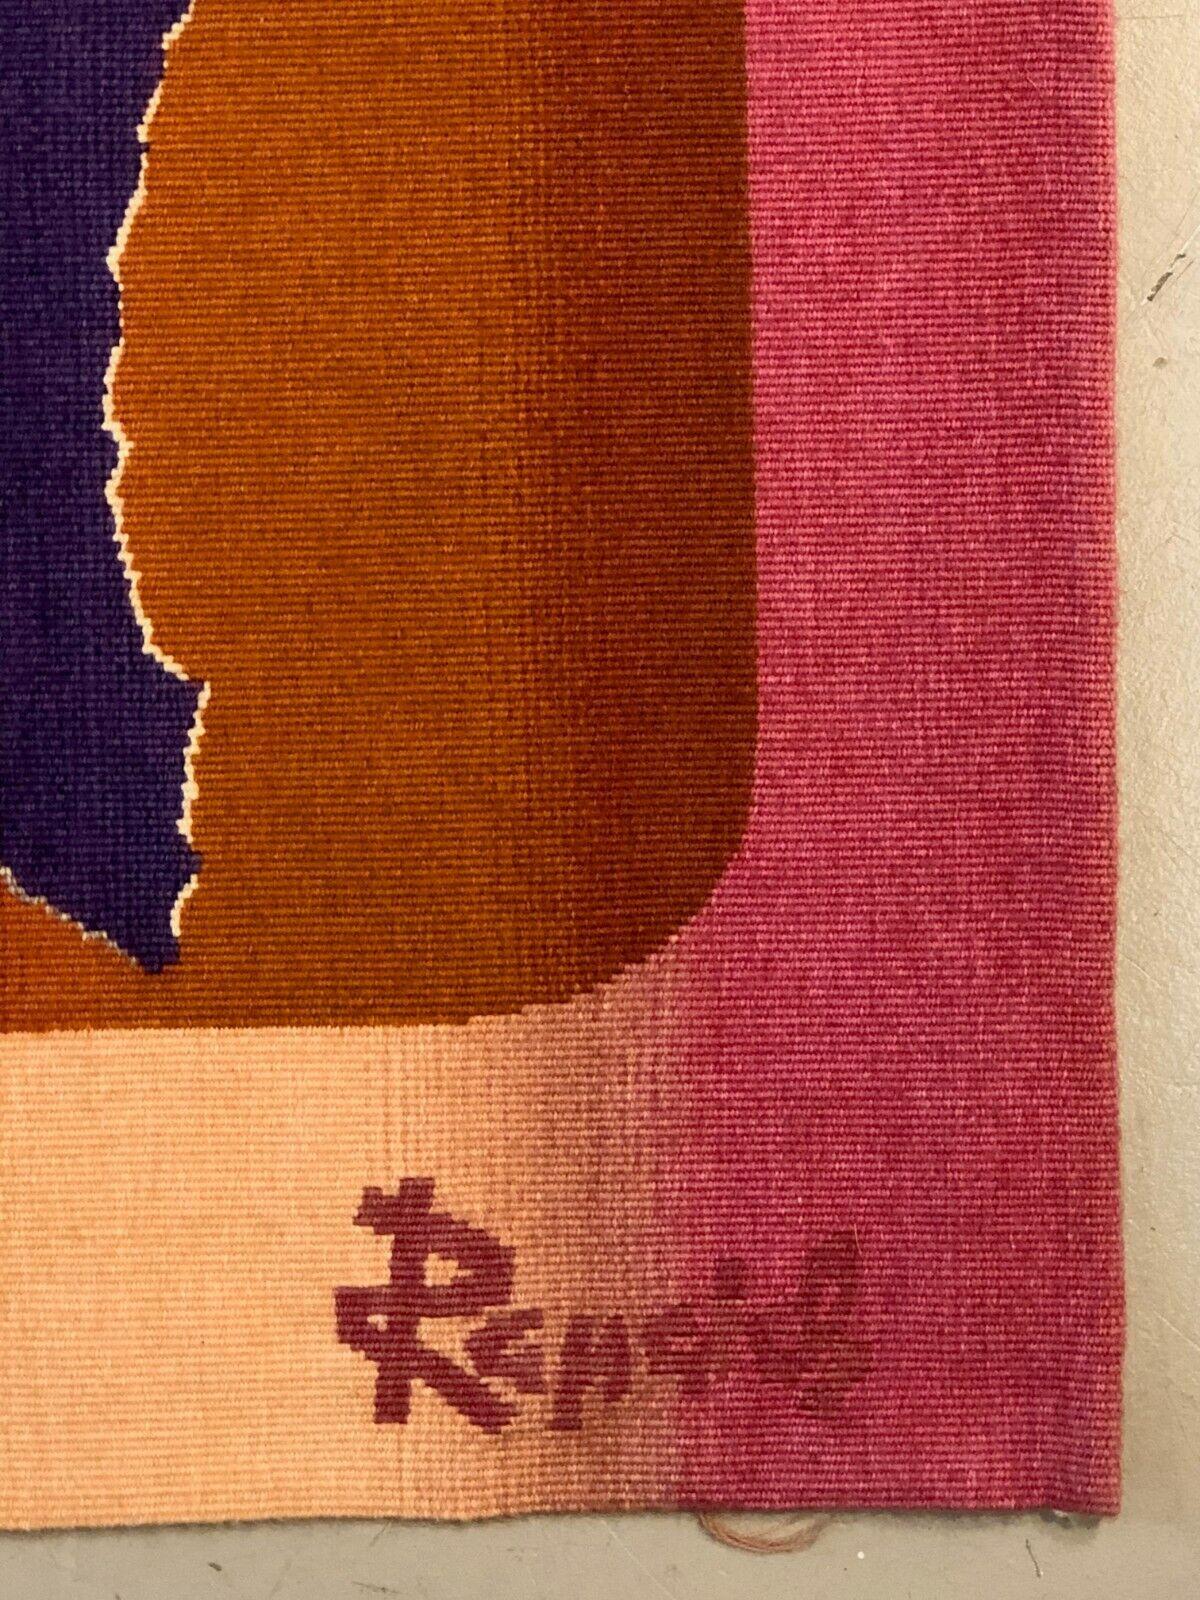 Exceptionnelle tapisserie d'Aubusson, post-moderne, Forme-Libre, Abstraction lyrique, tissée à la main en laine, signée au recto du monogramme MH et de la signature Rapaich ; un carton au verso détaille le titre de l'œuvre 